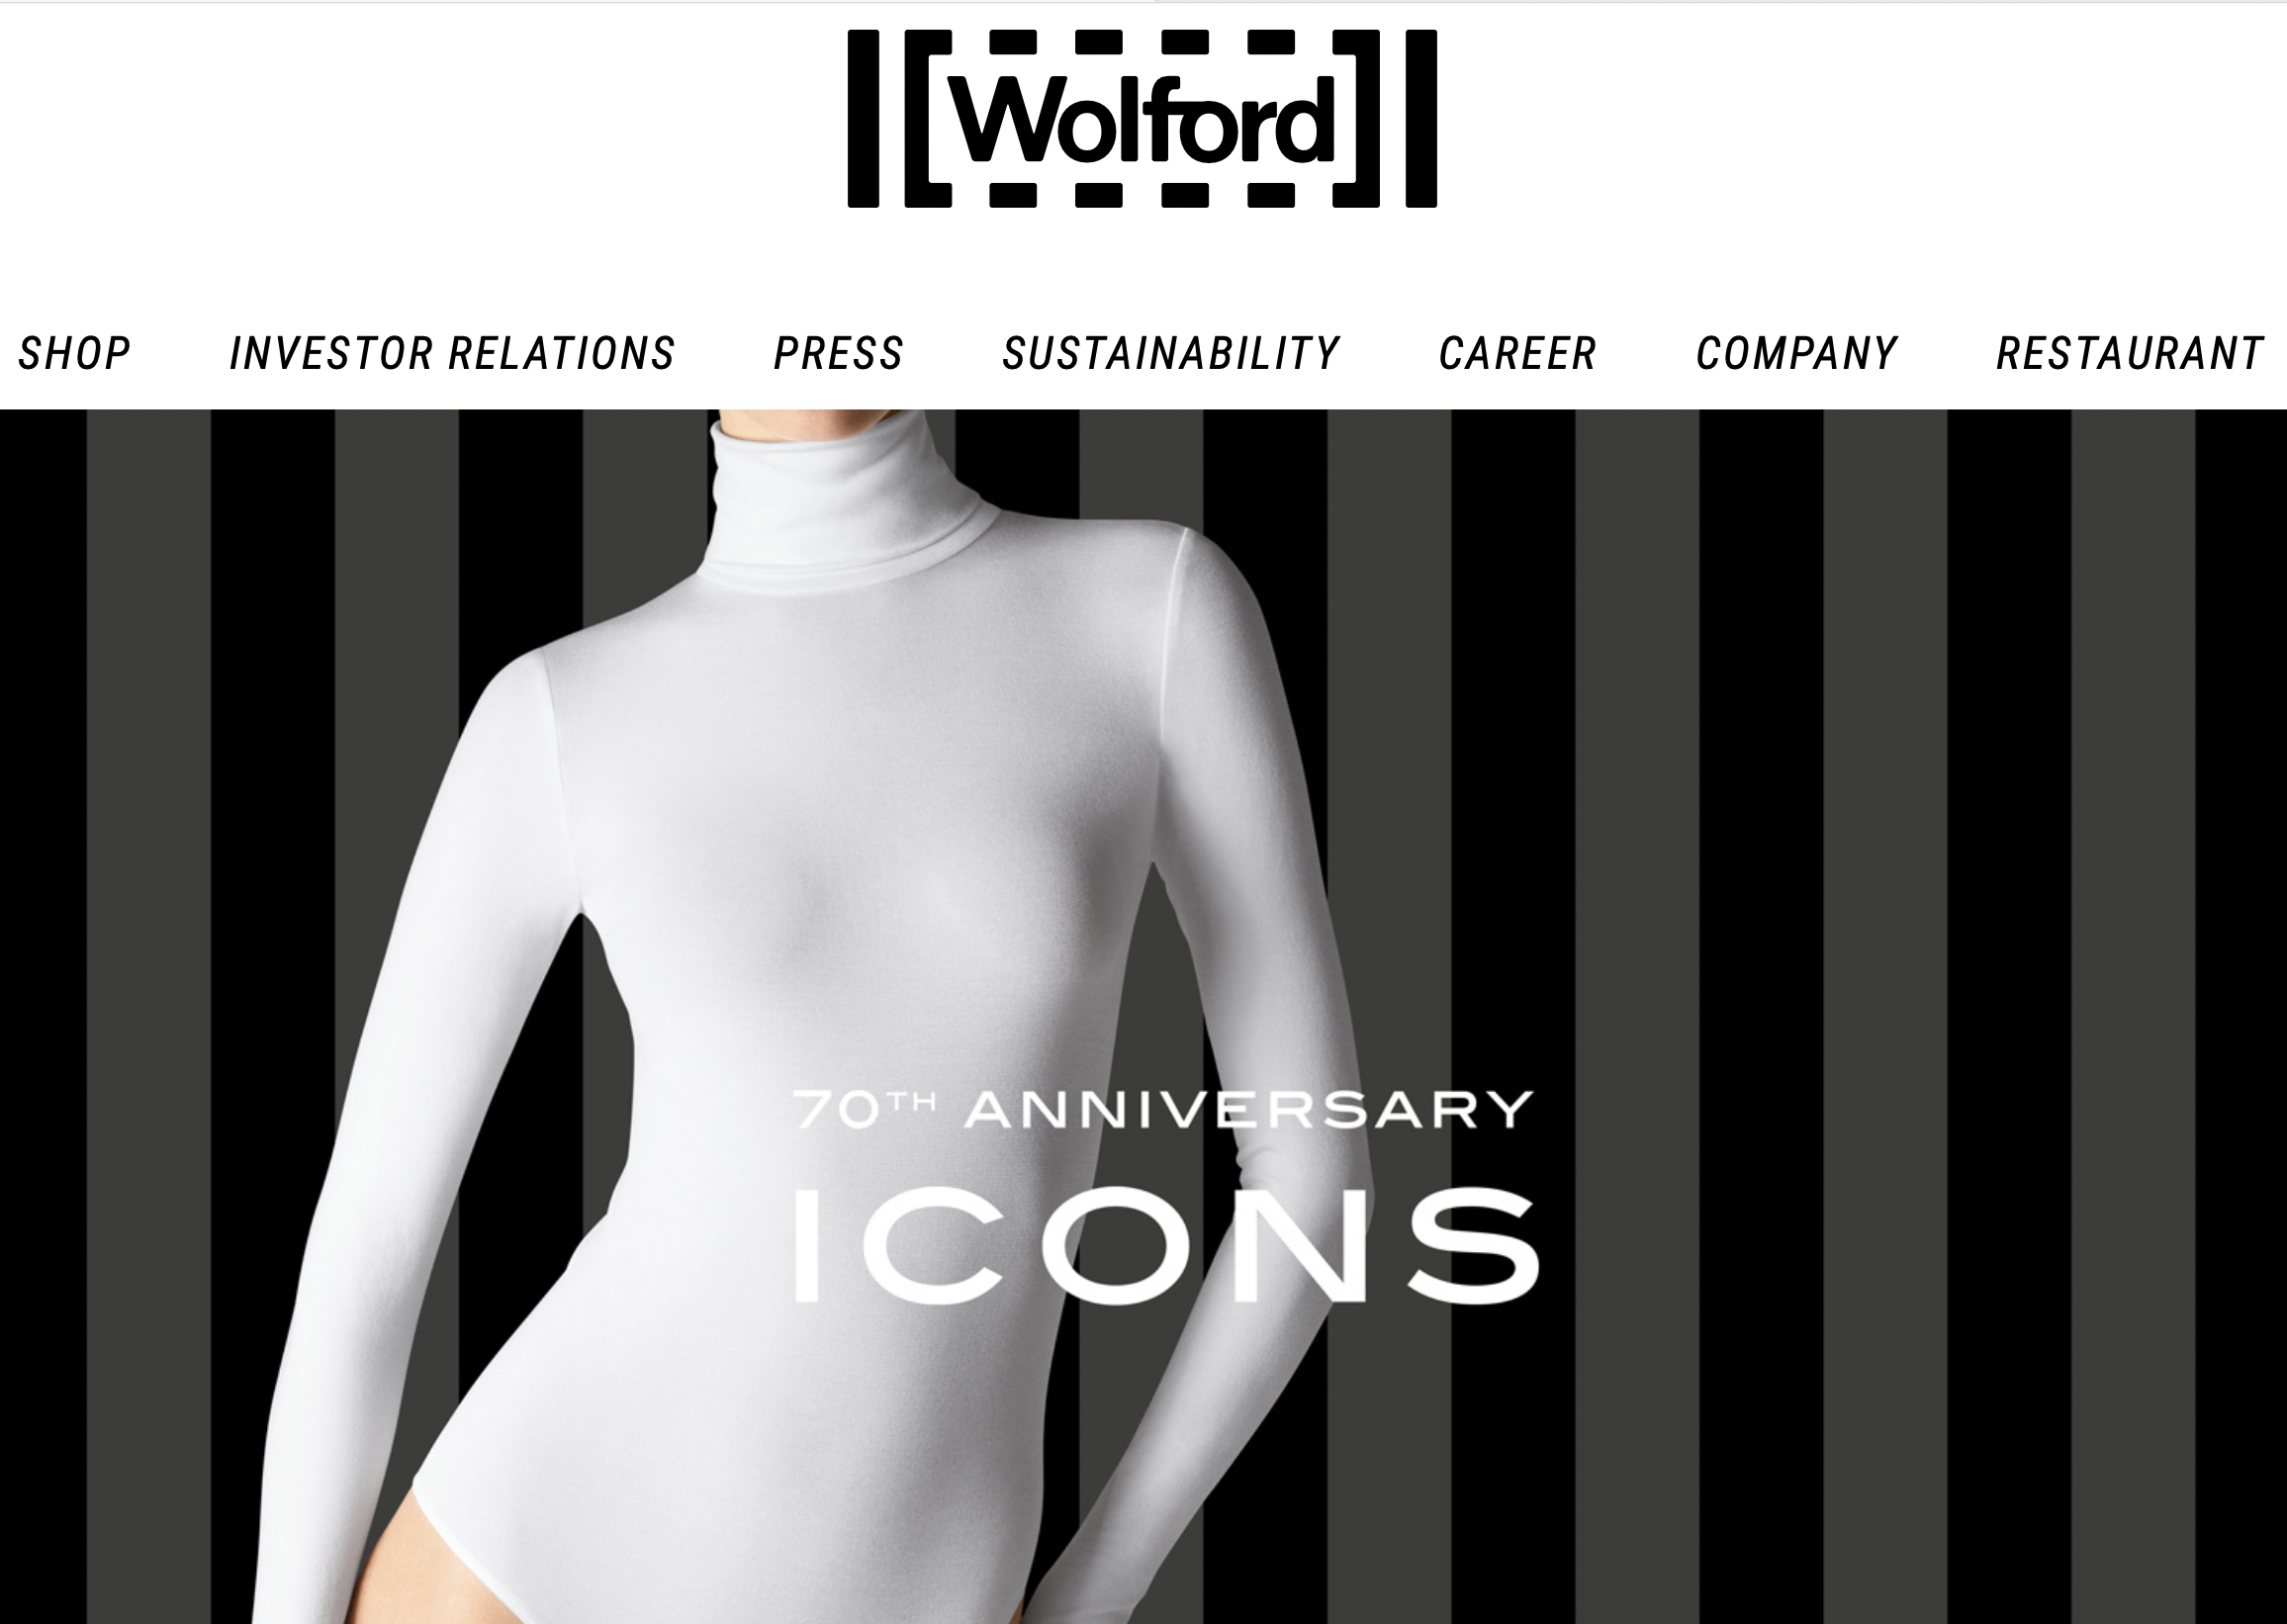 奥地利奢侈内衣品牌 Wolford 披露初步年度数据：销售增长但依然亏损，股东增资1760万欧元